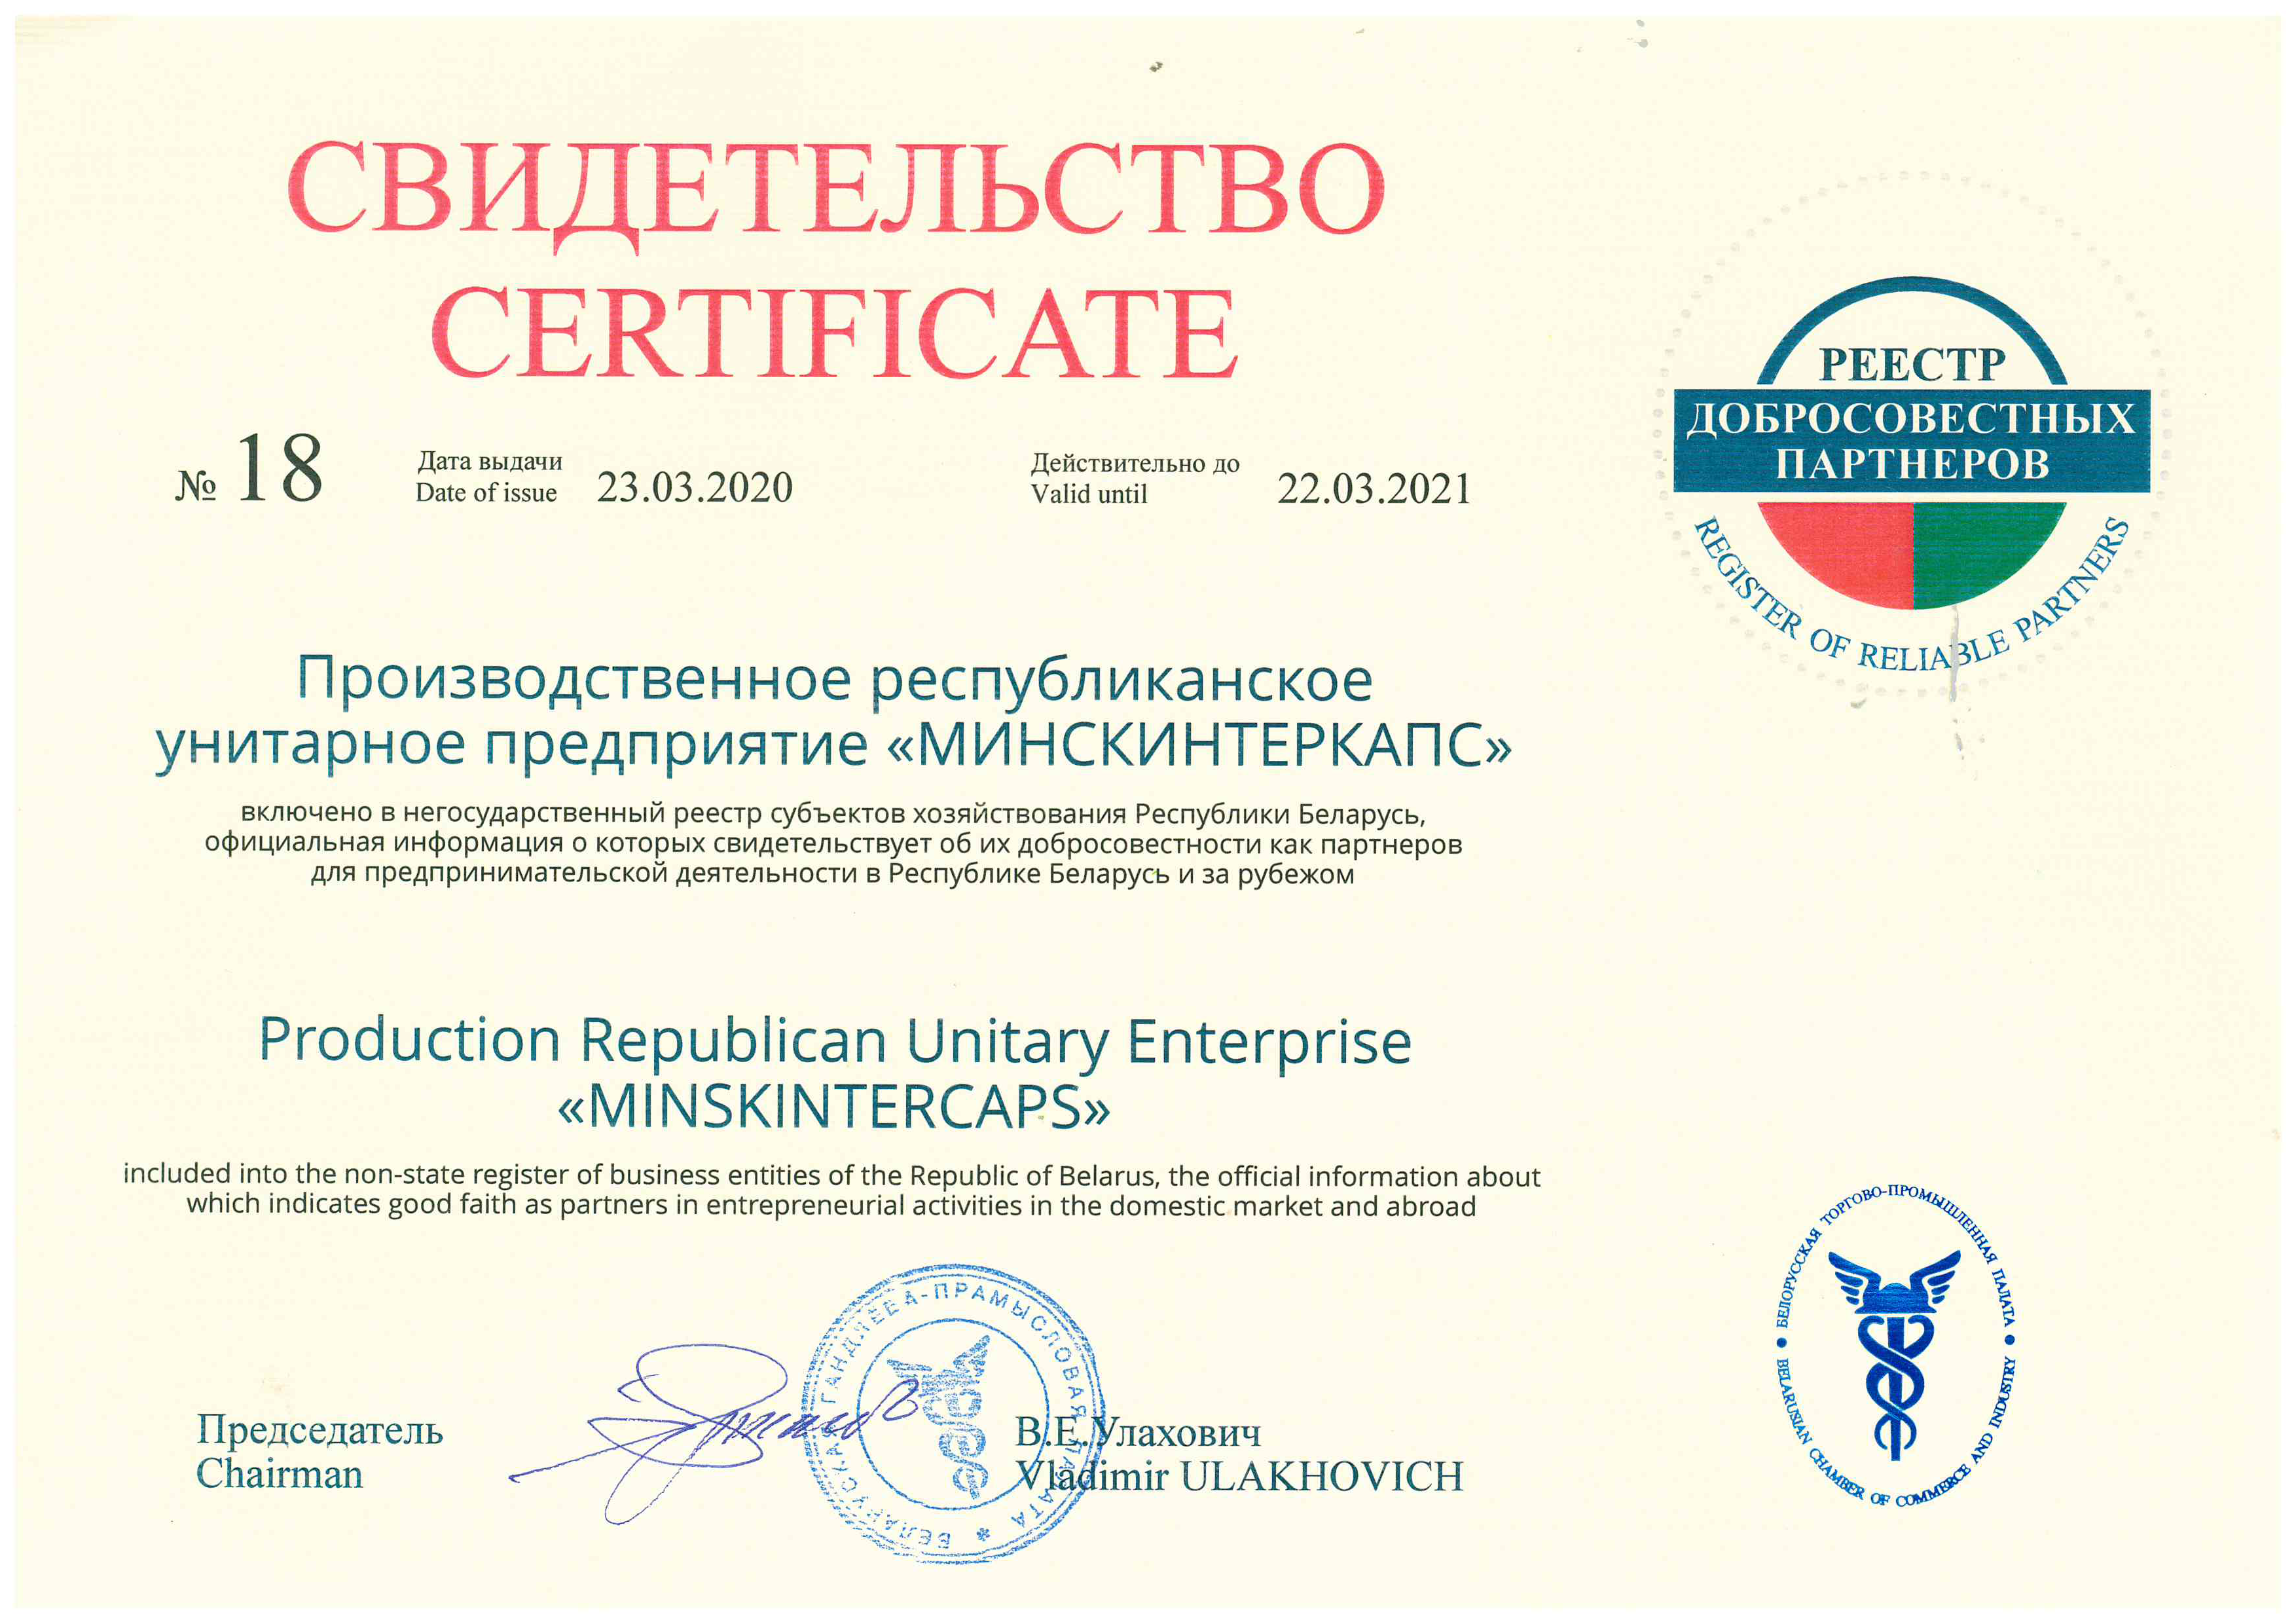 УП «Минскинтеркапс» вошло в реестр «Добросовестные партнеры»